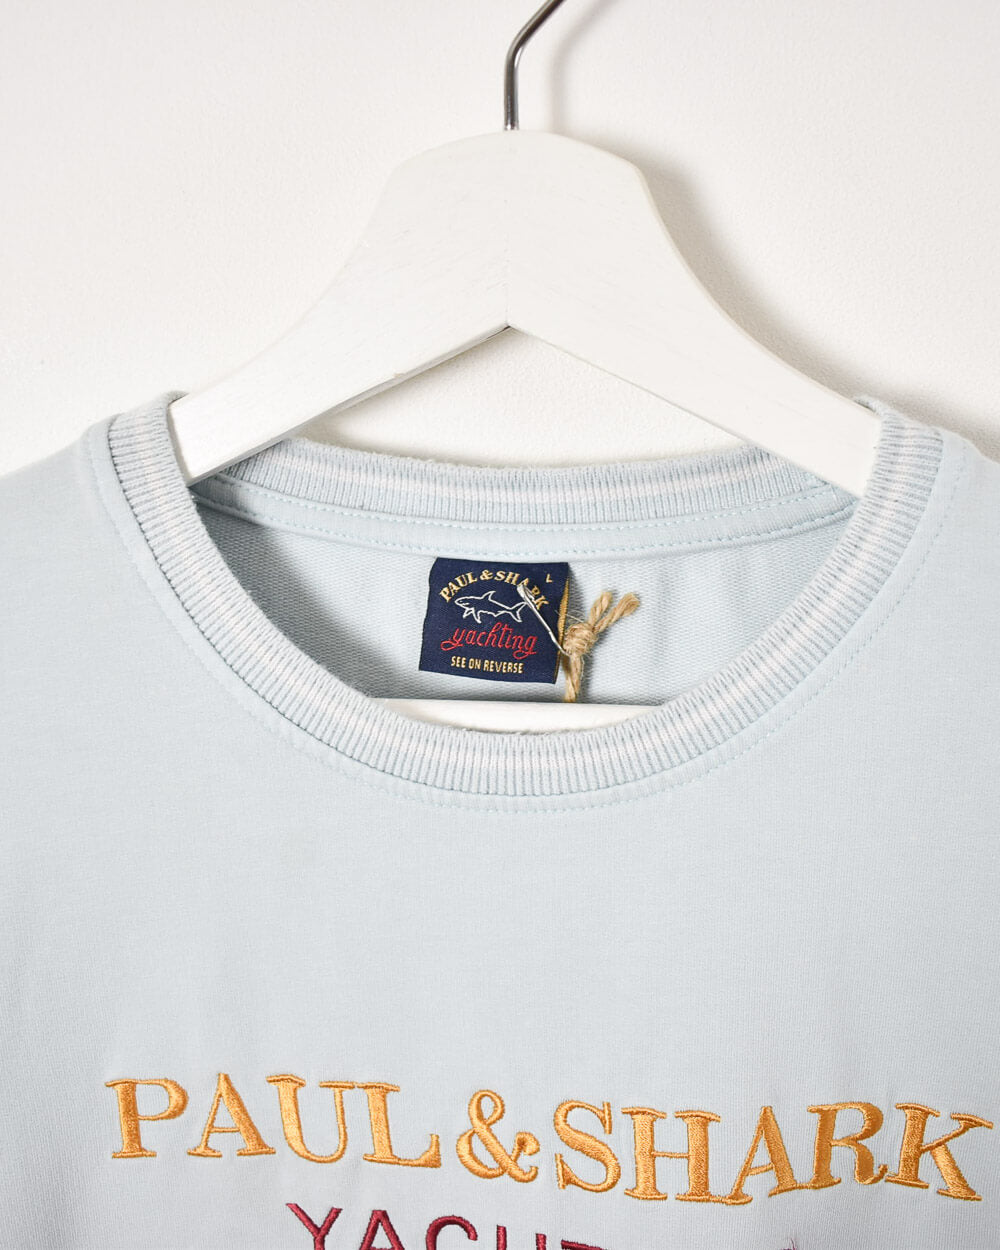 Baby Paul & Shark Yachting Sweatshirt - Medium